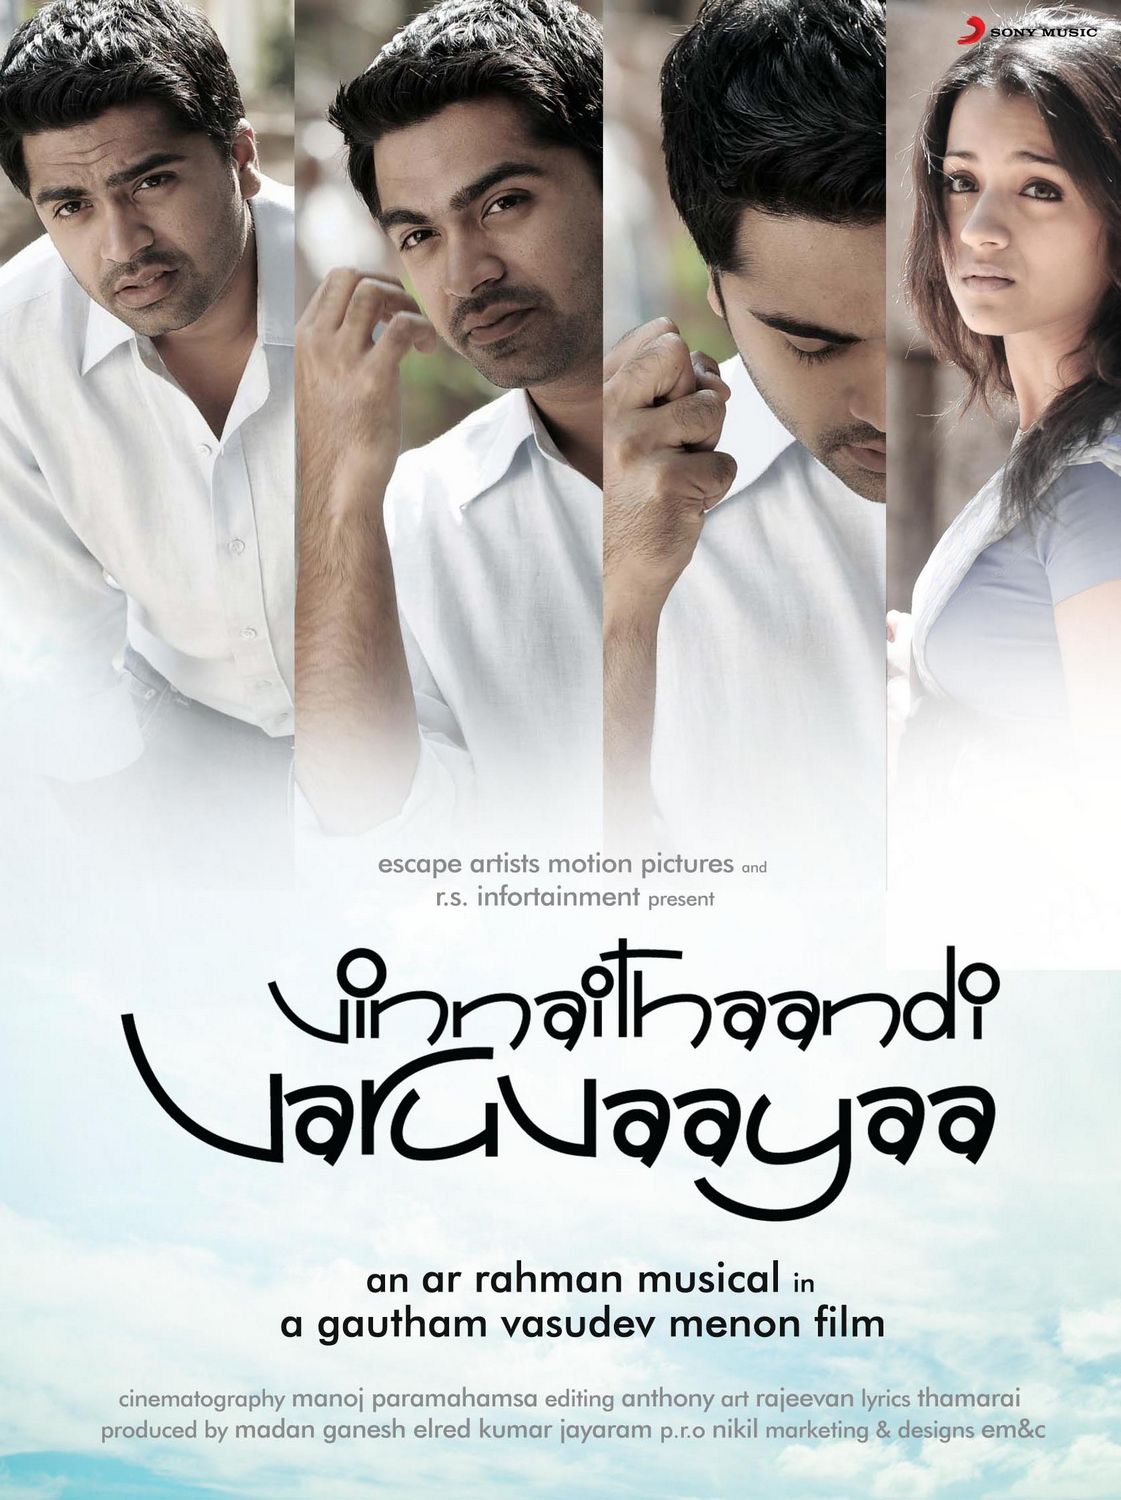 Extra Large Movie Poster Image for Vinnaithaandi Varuvaayaa 